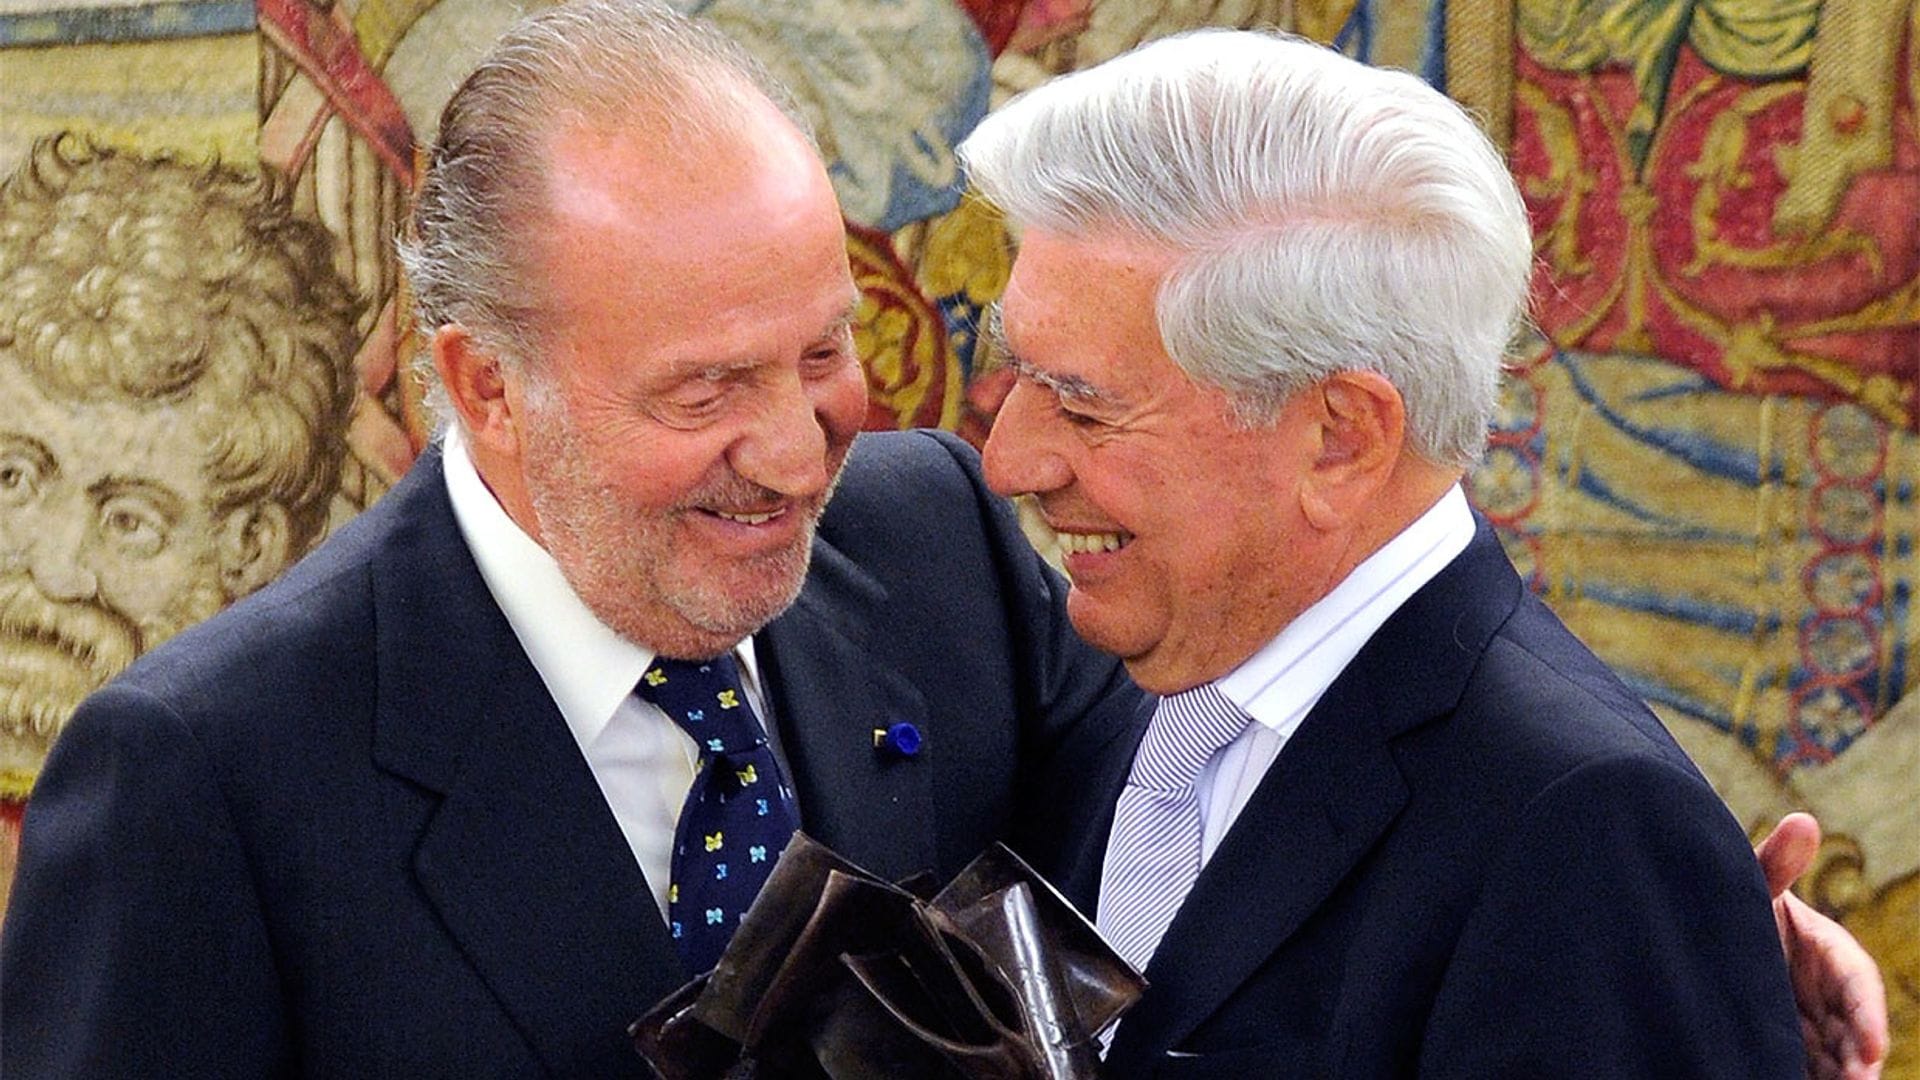 El rey Juan Carlos tiene previsto asistir a la ceremonia de ingreso de Mario Vargas Llosa en la Academia Francesa